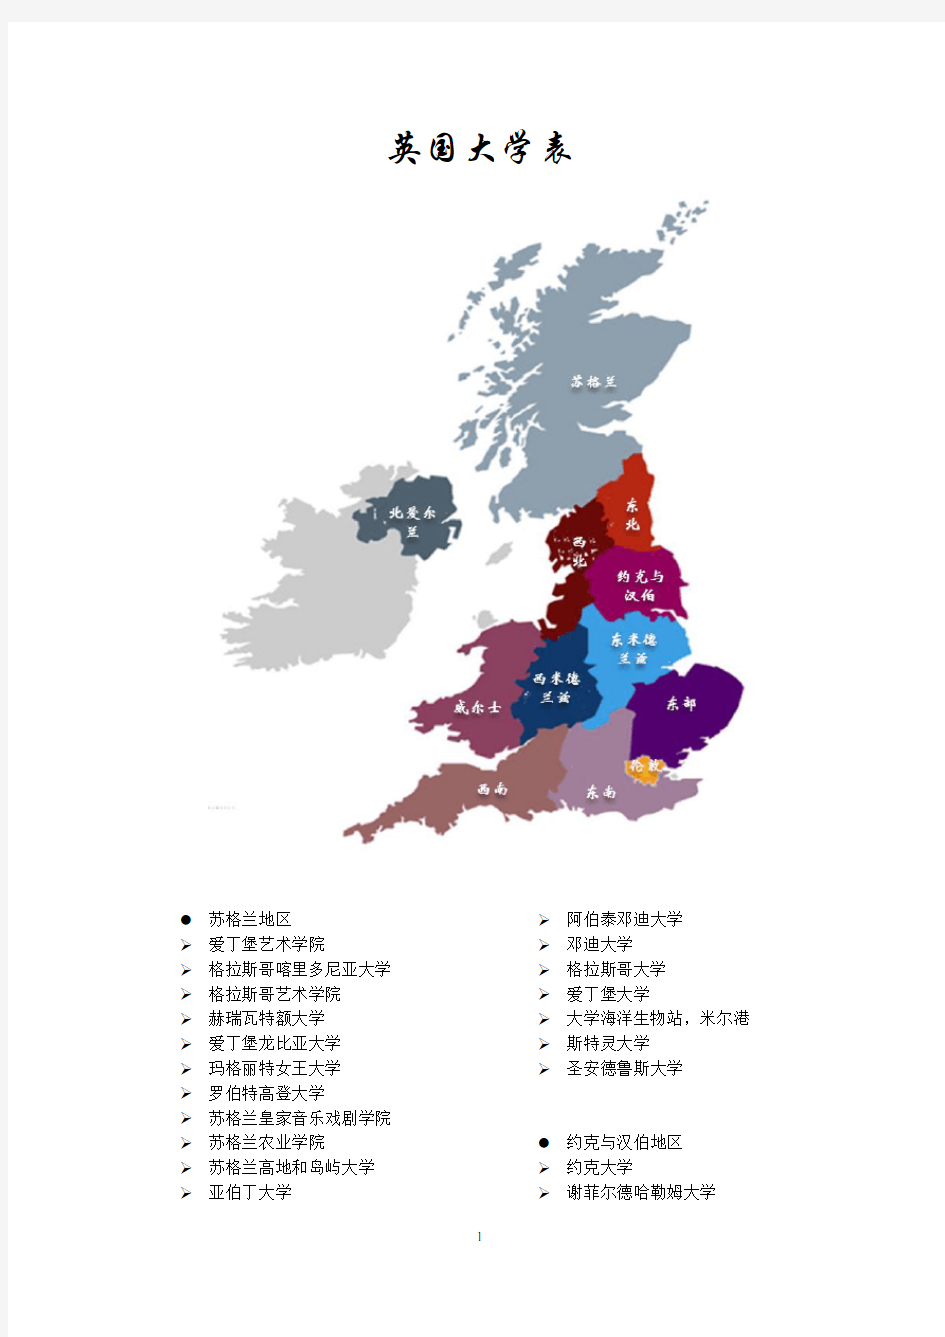 英国大学表(含地图按地区划分-亲自整理独版)